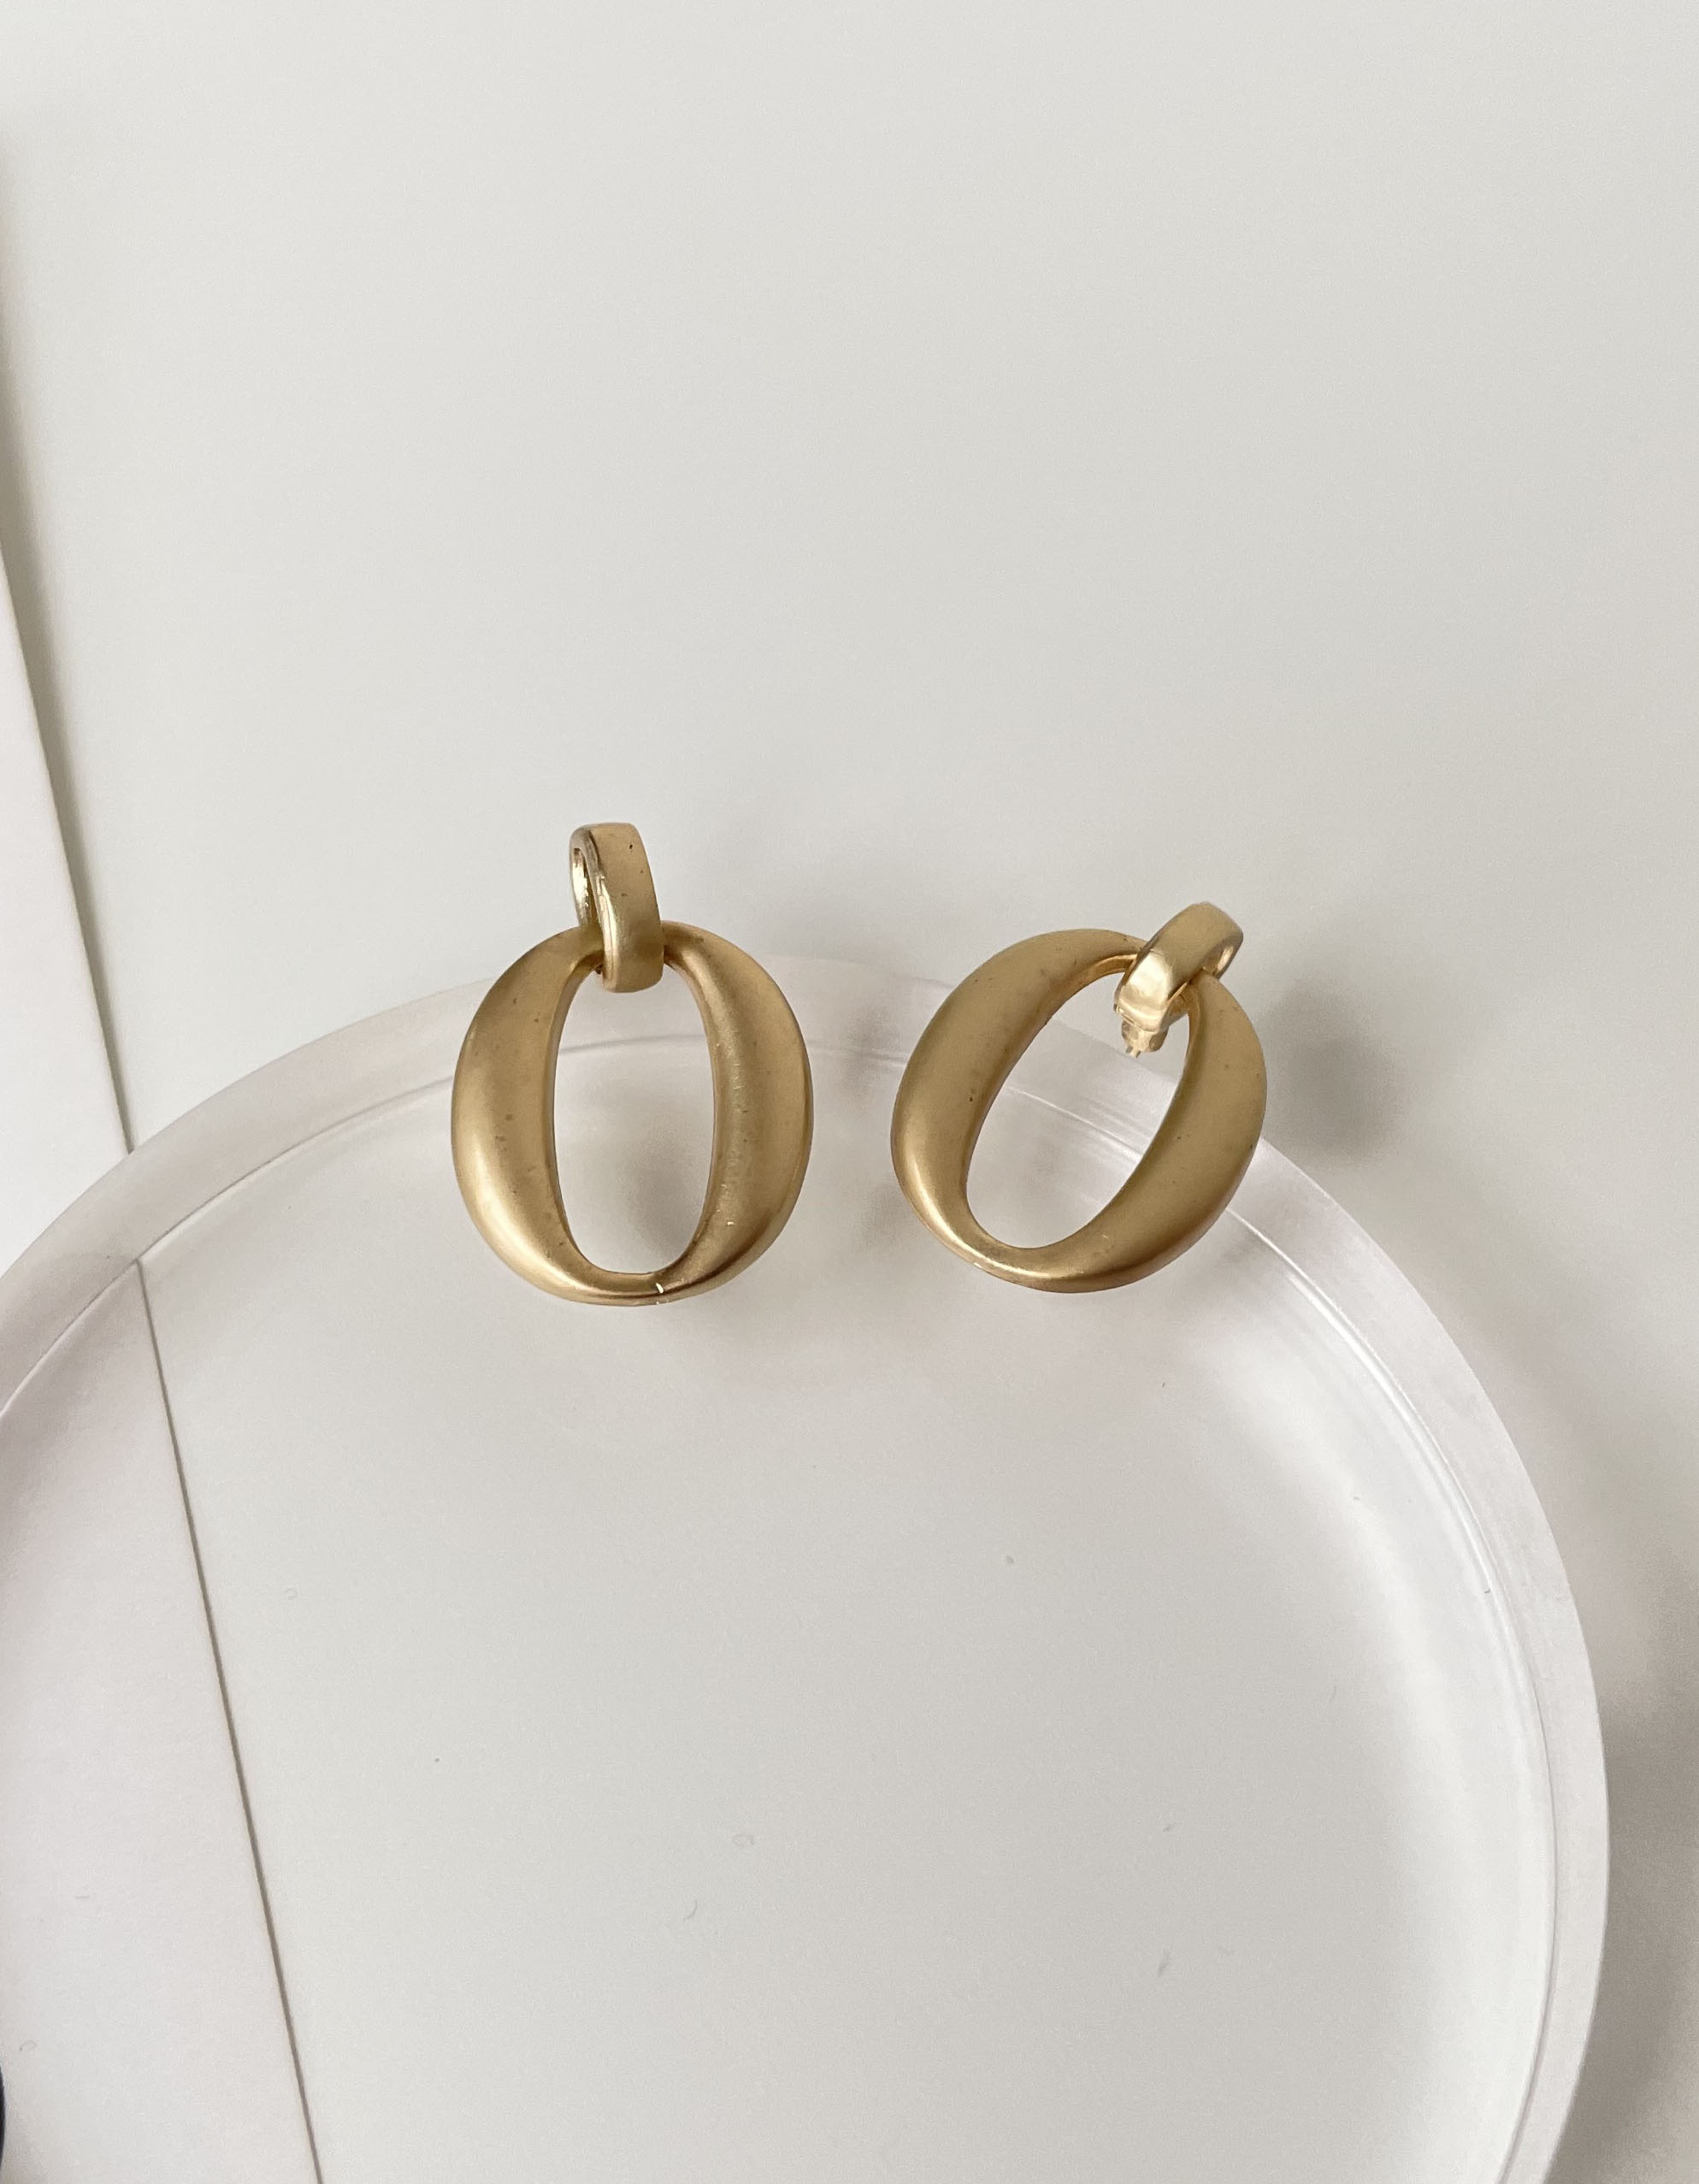 垂墜式 - 法式圓圈耳環 - 輕奓生活x平價飾品 | 迪希雅 deesir 飾品 💍